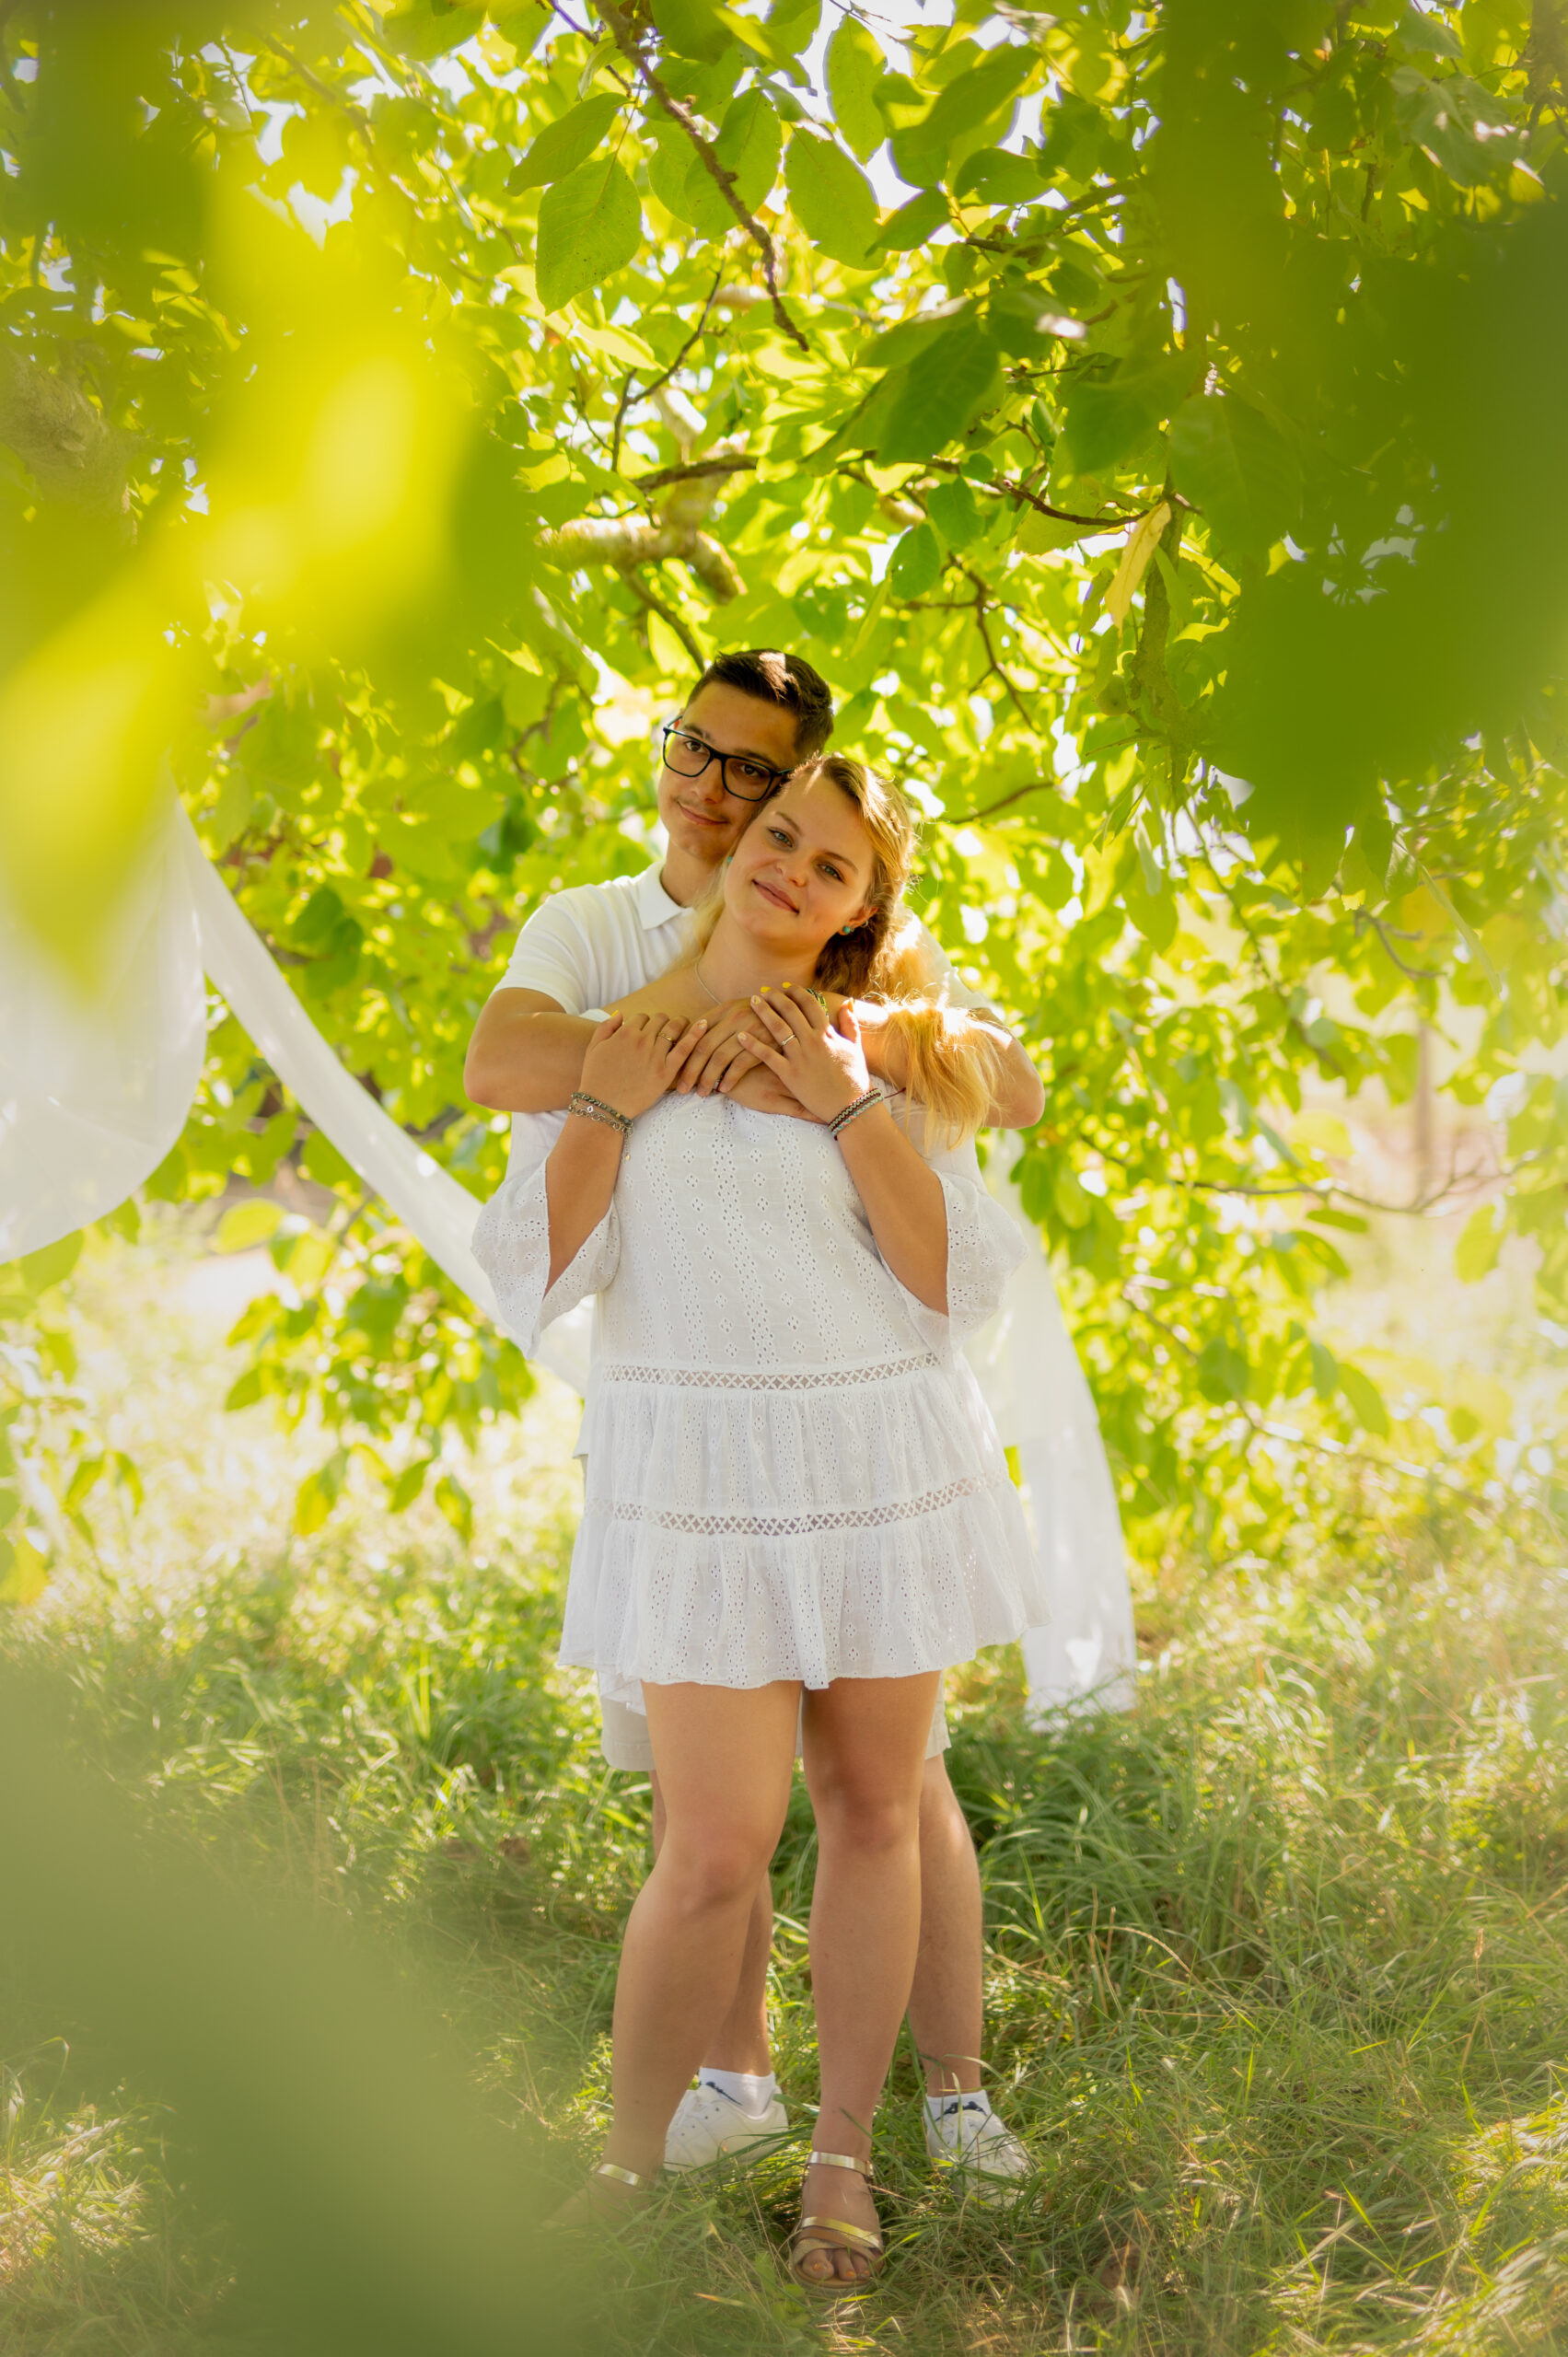 photographe professionnelle couple amour complicité tendresse extérieur arbre foret blanc voilage couleur naturelle regard amoureux habits blancs jeunes jeunesse